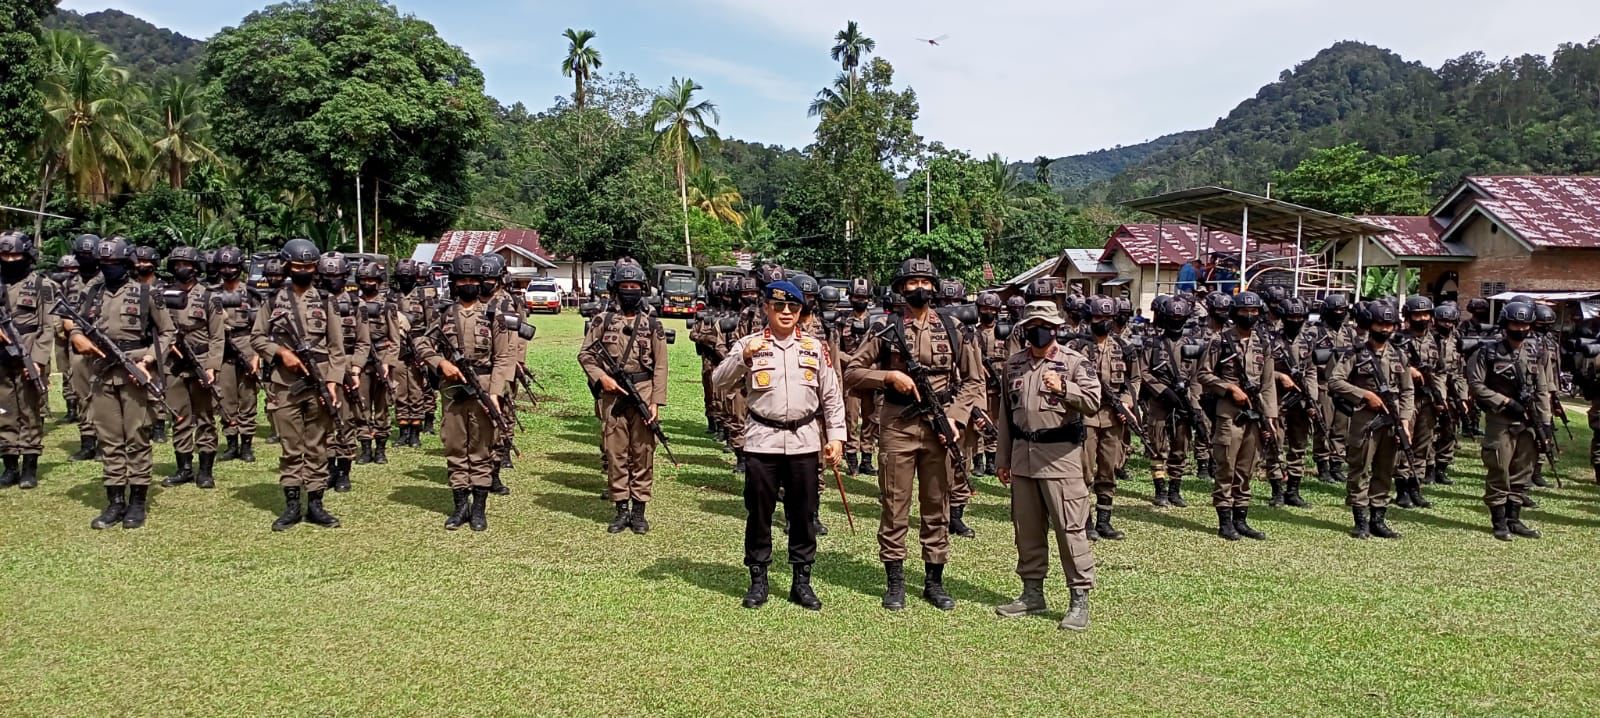 Back Up Pemberantasan Illog, 100 Personel Brimob Diturunkan di Rimbang Baling